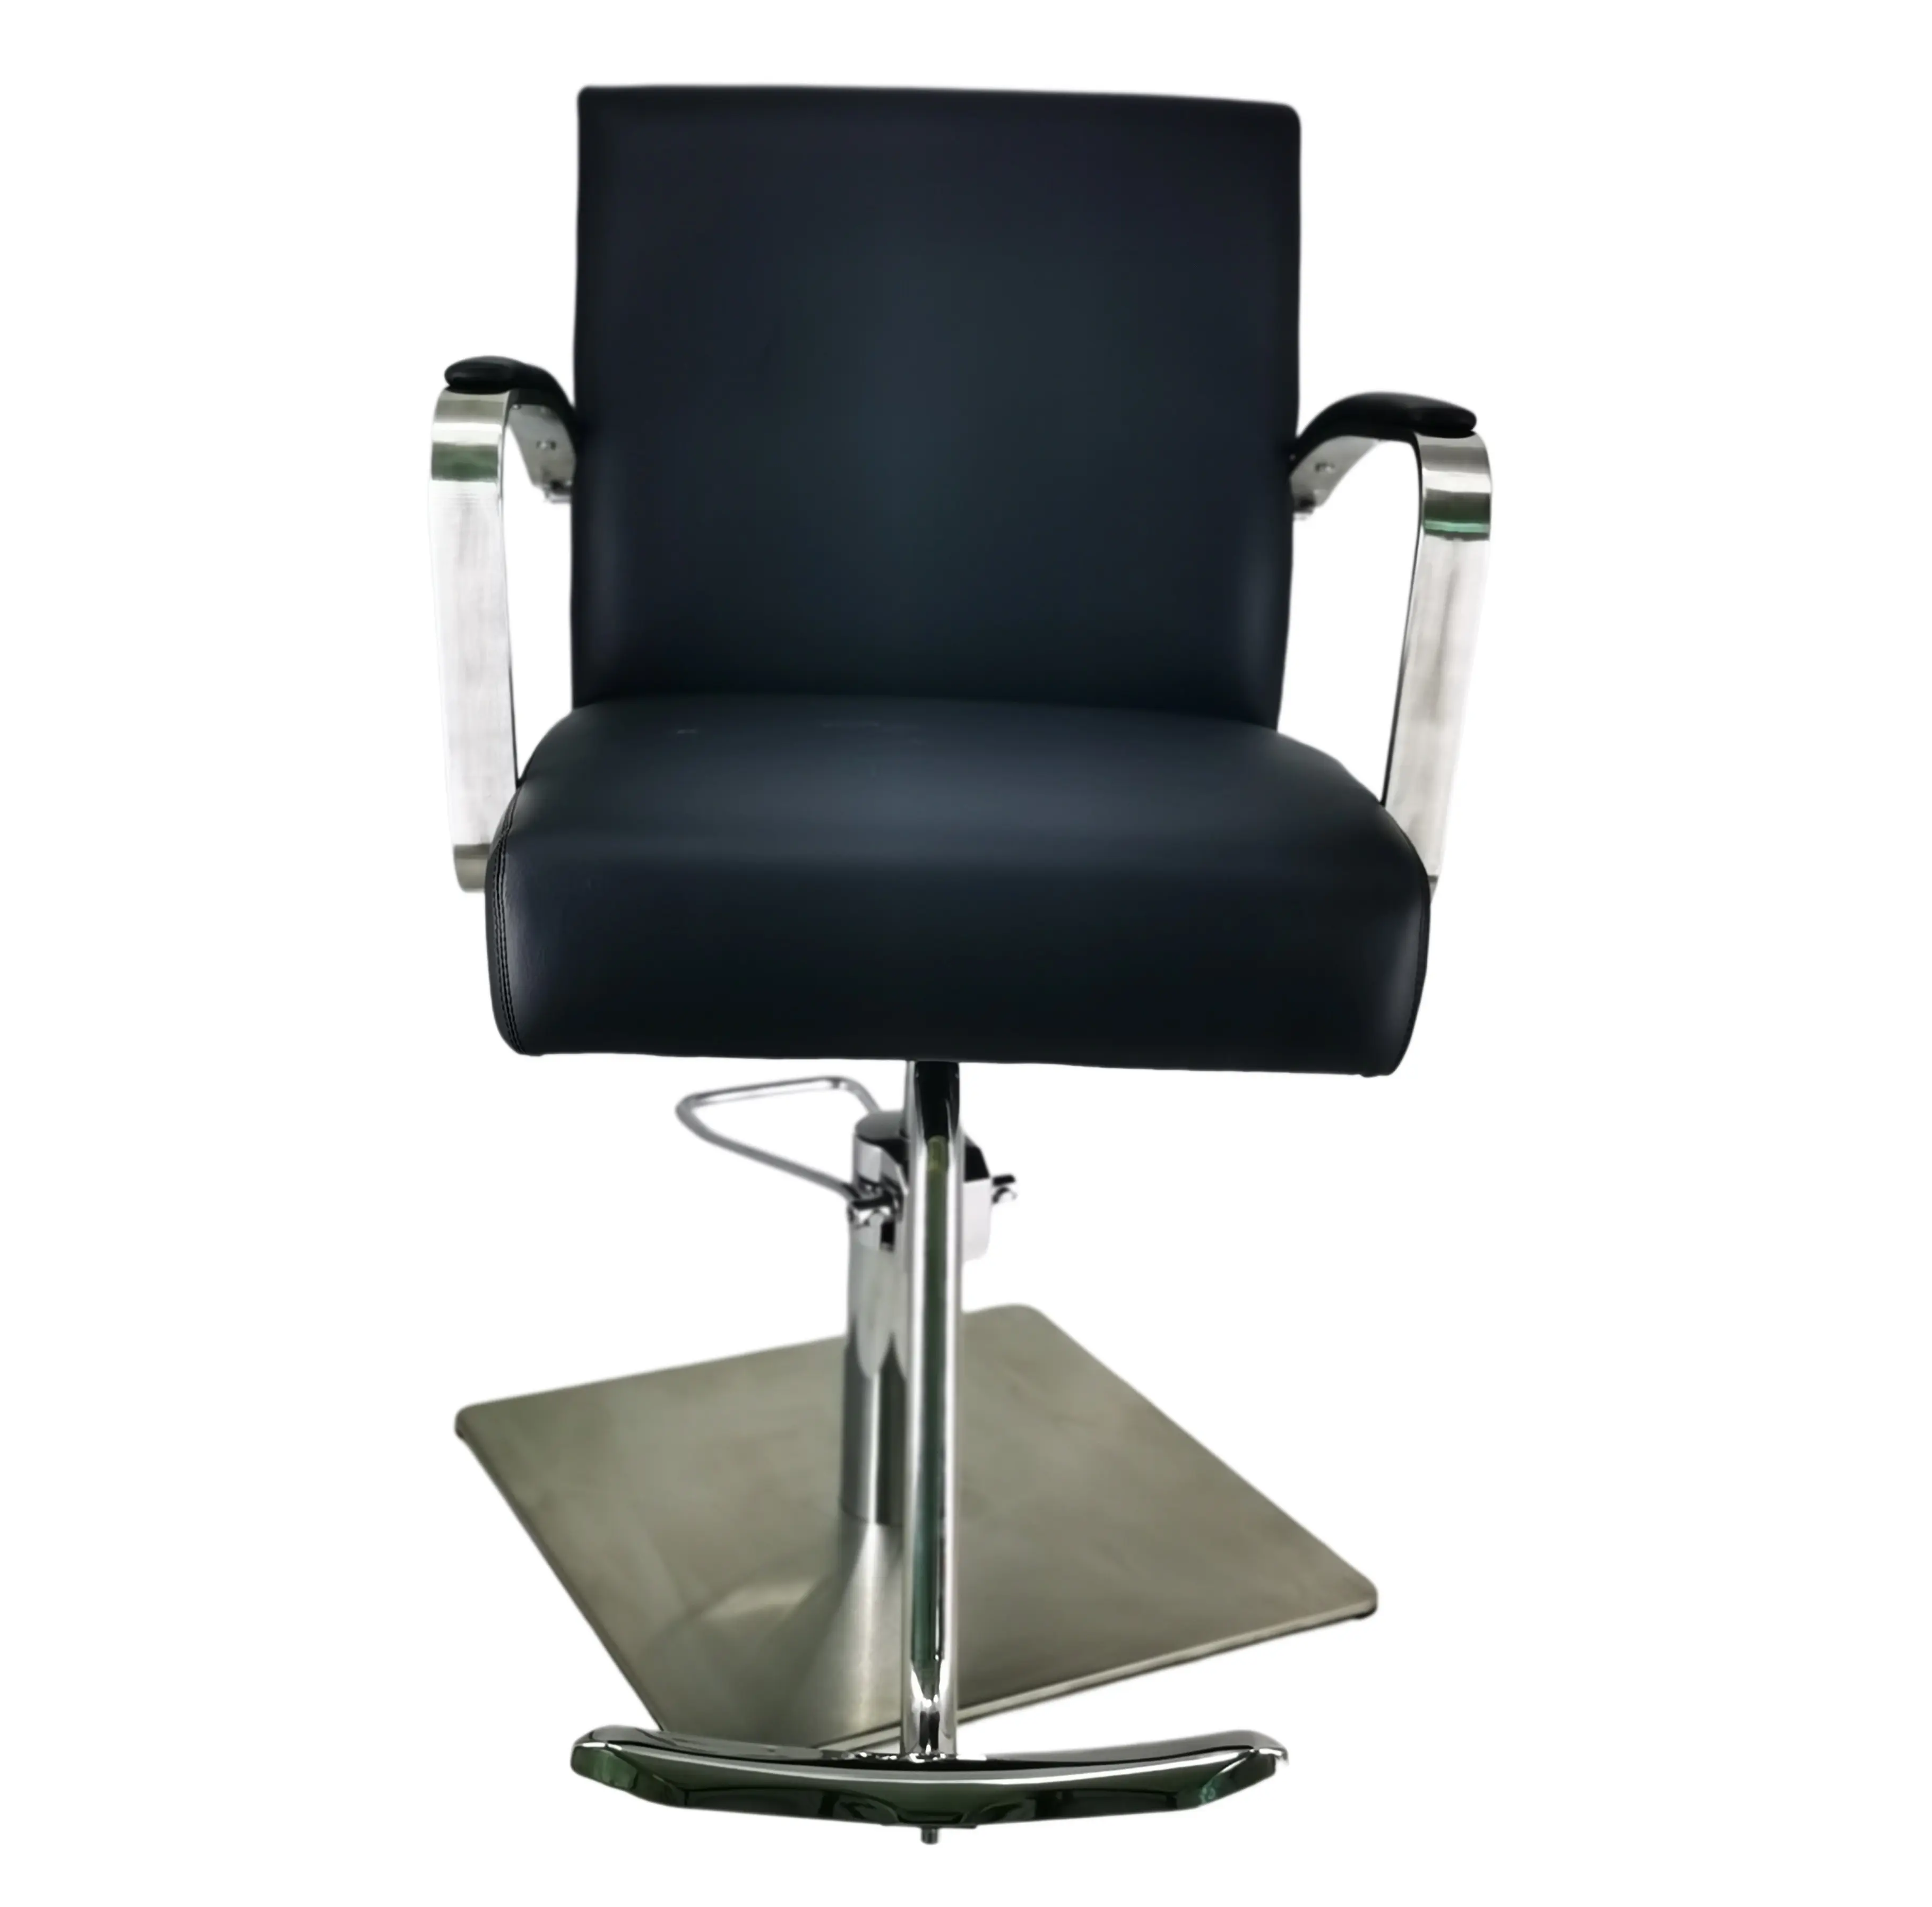 Commercio all'ingrosso della sedia di stile del barbiere del salone moderno idraulico nero della sedia classica del salone del rifornimento diretto della fabbrica